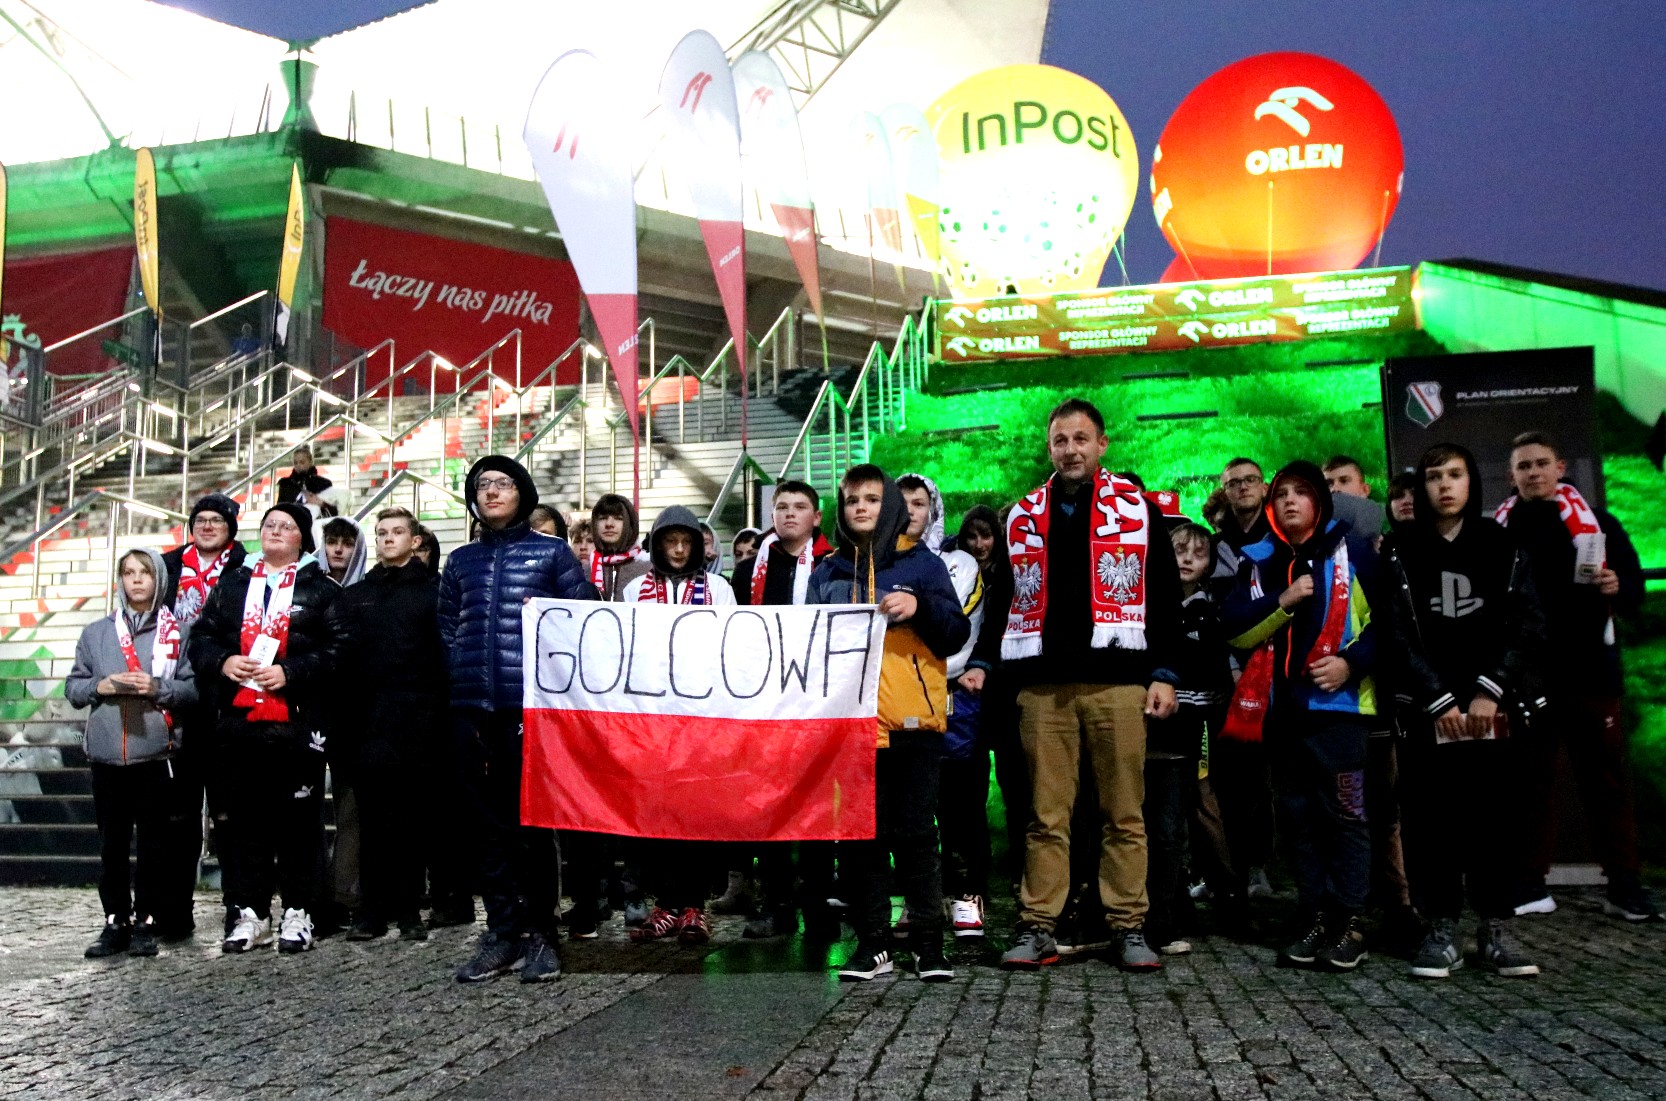 Grupa dzieci i dorosłych stoi pod betonowymi schodami, trzymają biało-czerwoną flagę z napisem Golcowa.